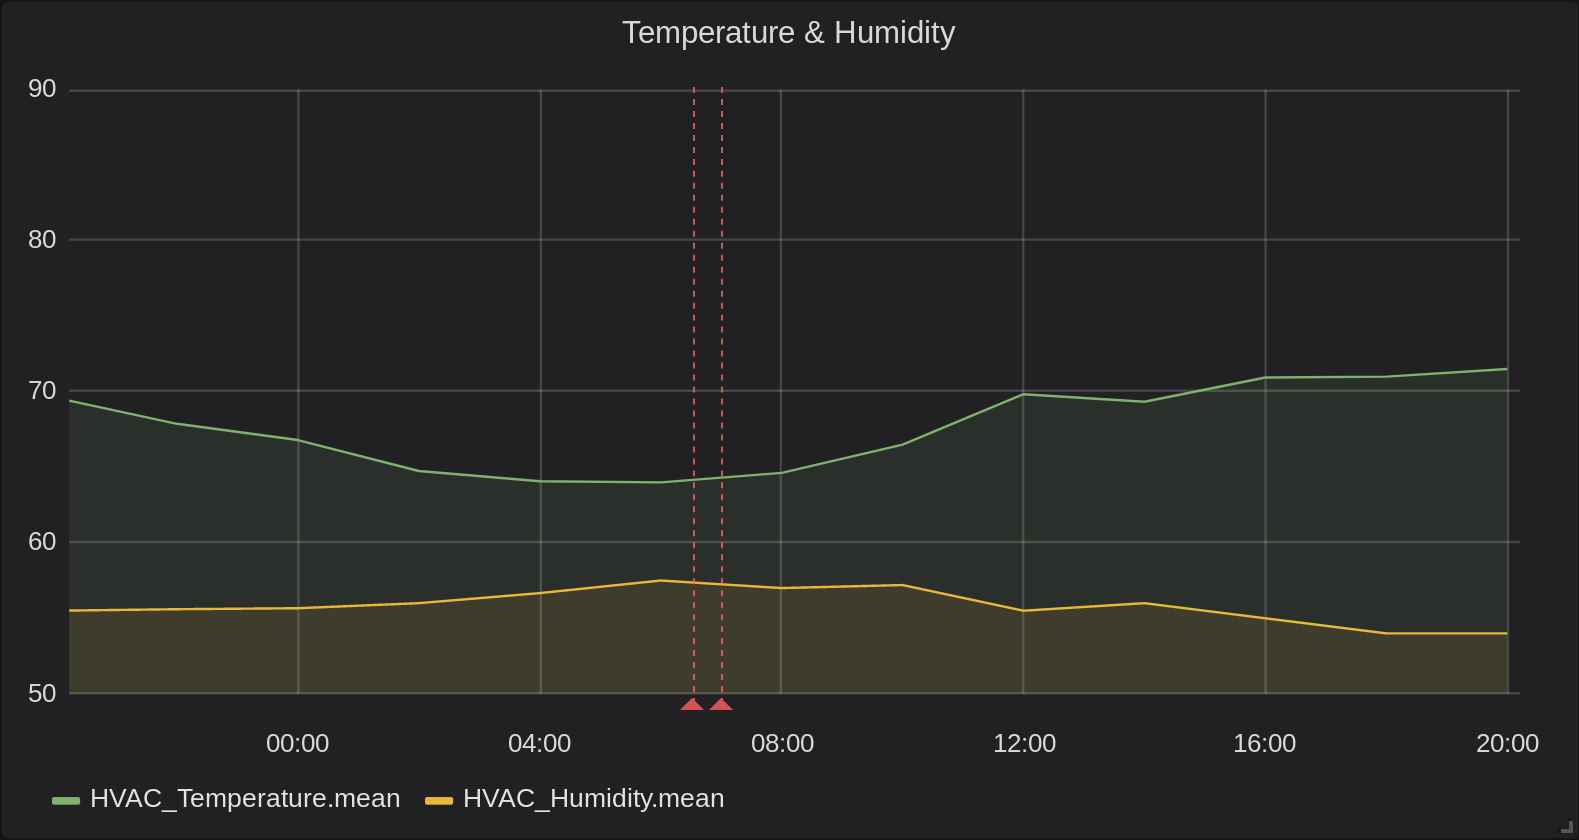 24 hours of temperature data